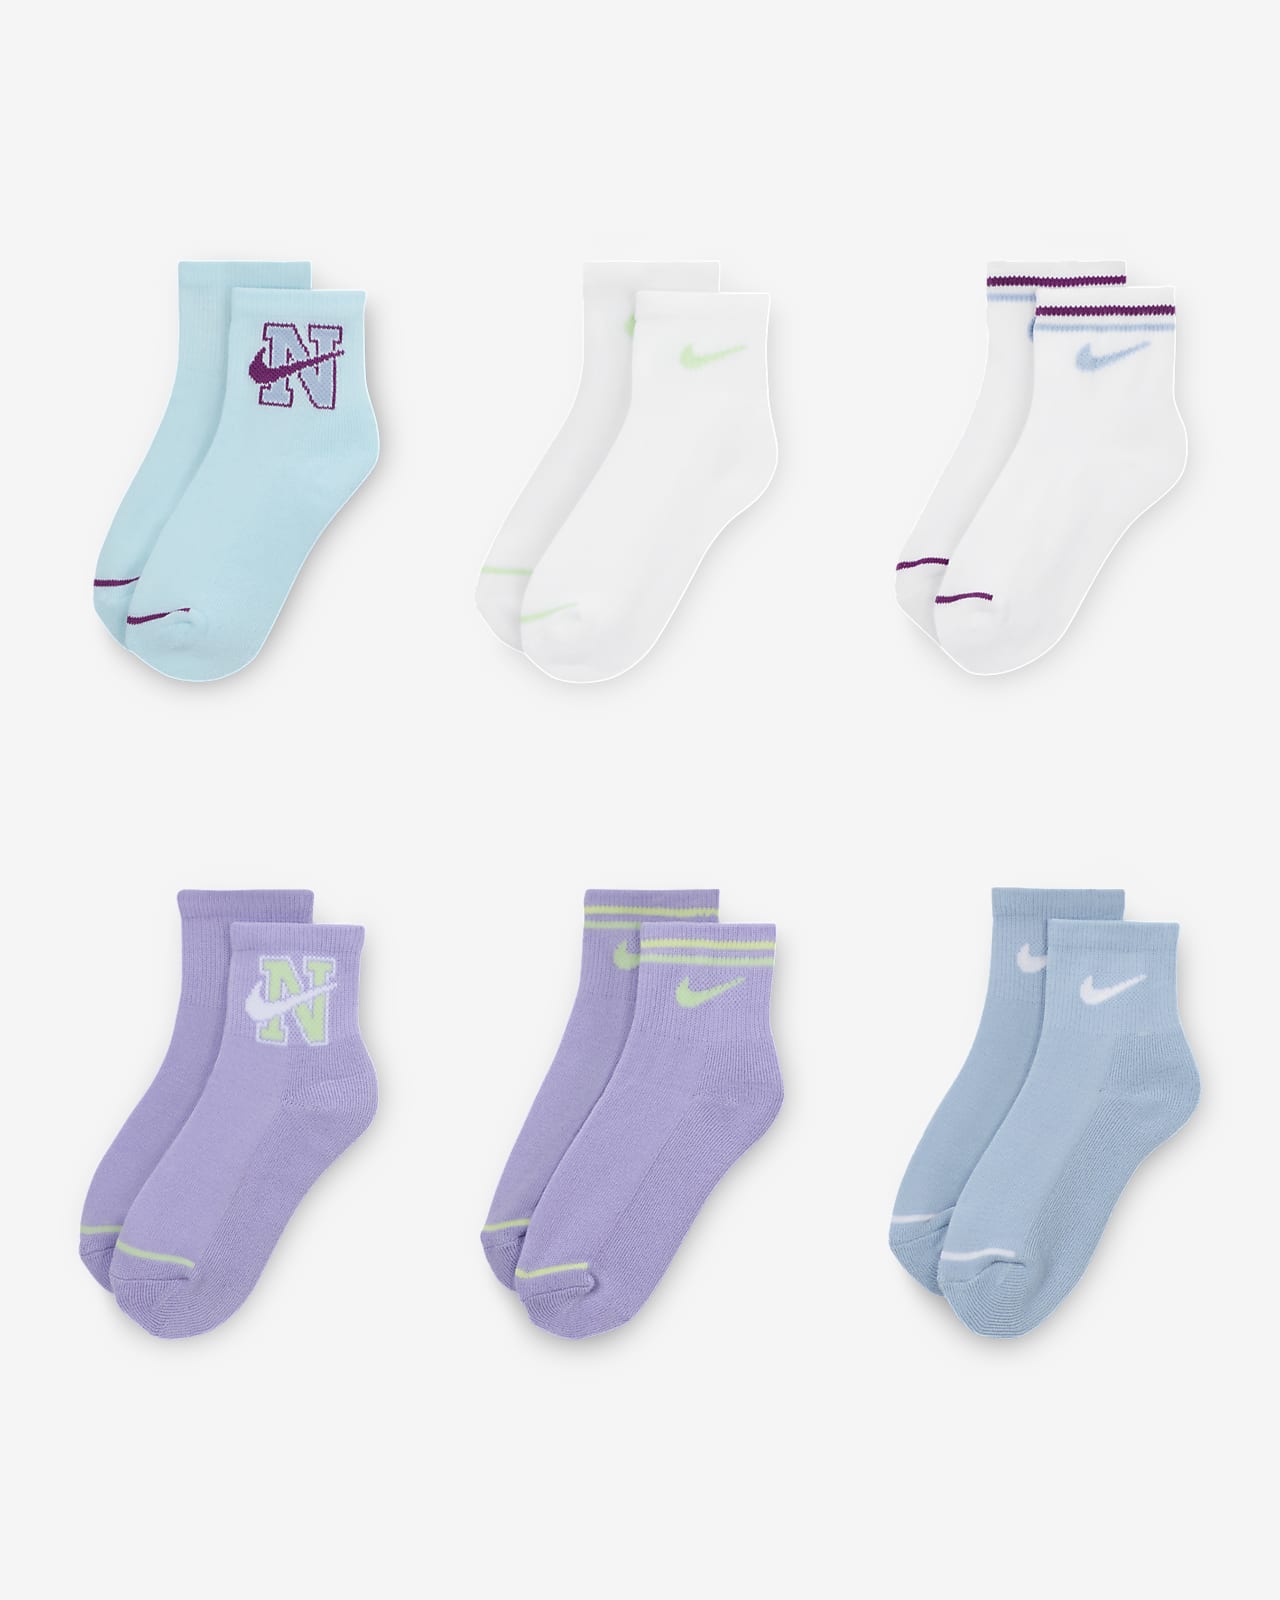 Nike Prep in Your Step Little Kids' Quarter-Length Socks (6 Pairs)